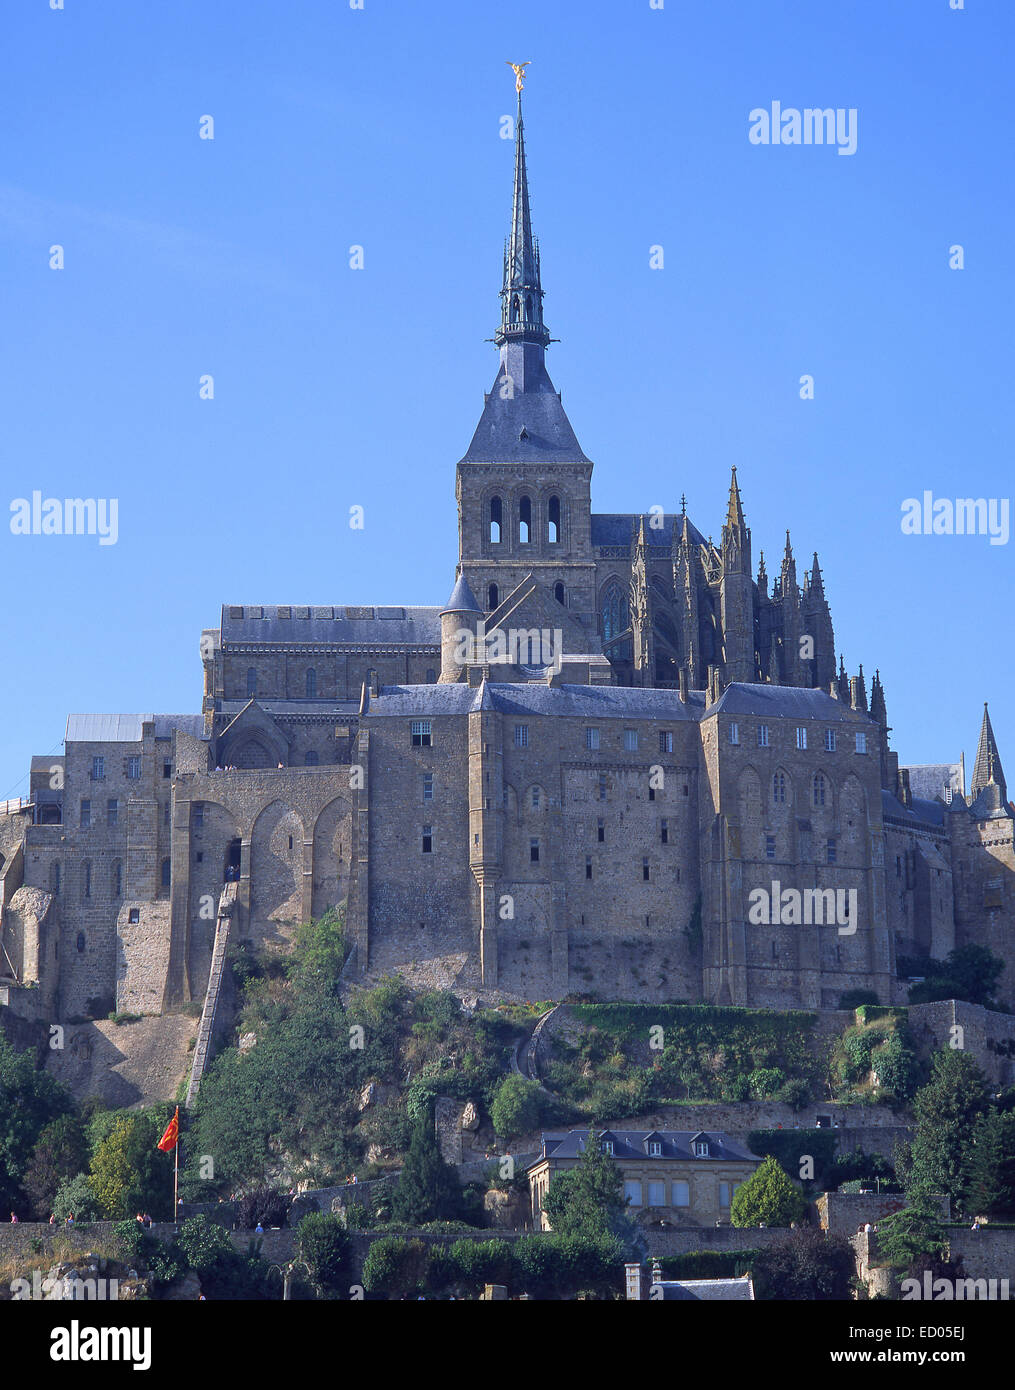 Le Mont Saint-Michel (Saint Michael's Mount), Manche, Lower Normandy Region, France Stock Photo